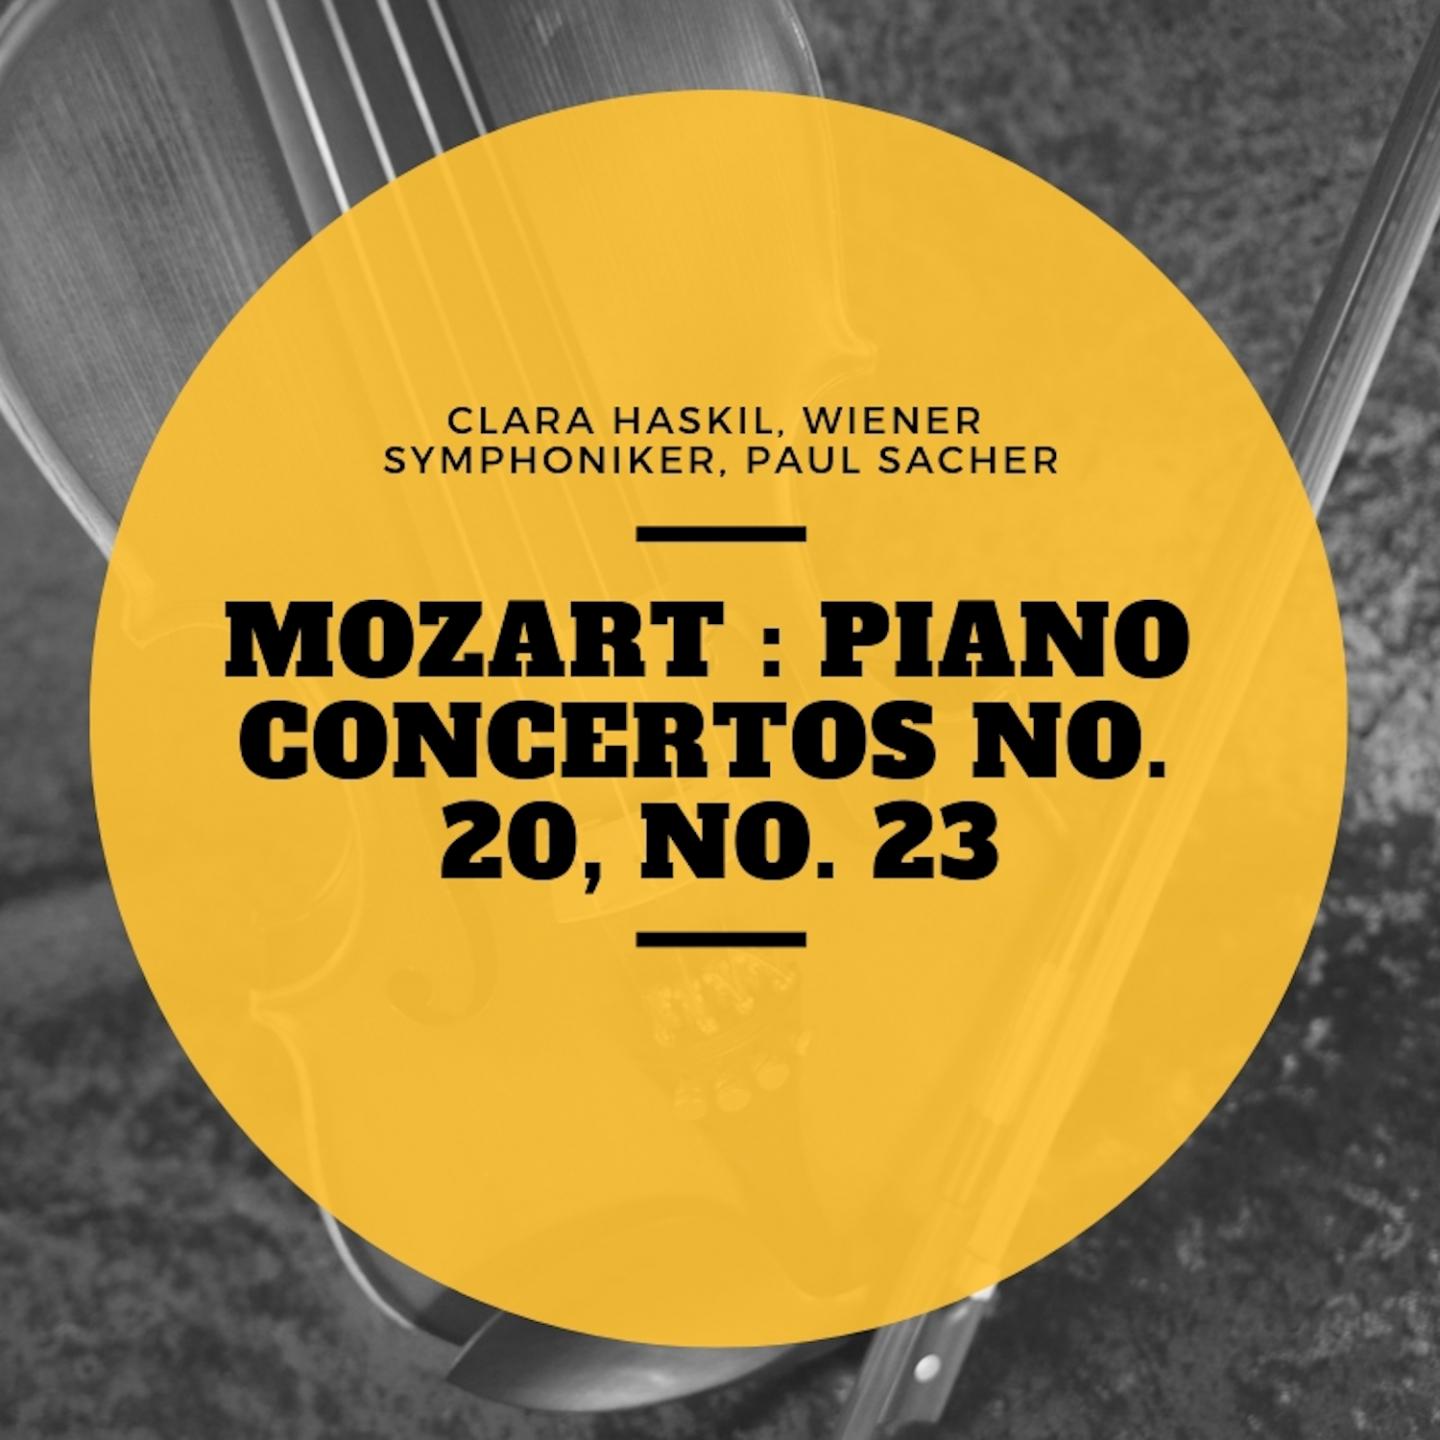 Mozart : Piano Concertos No. 20, No. 23